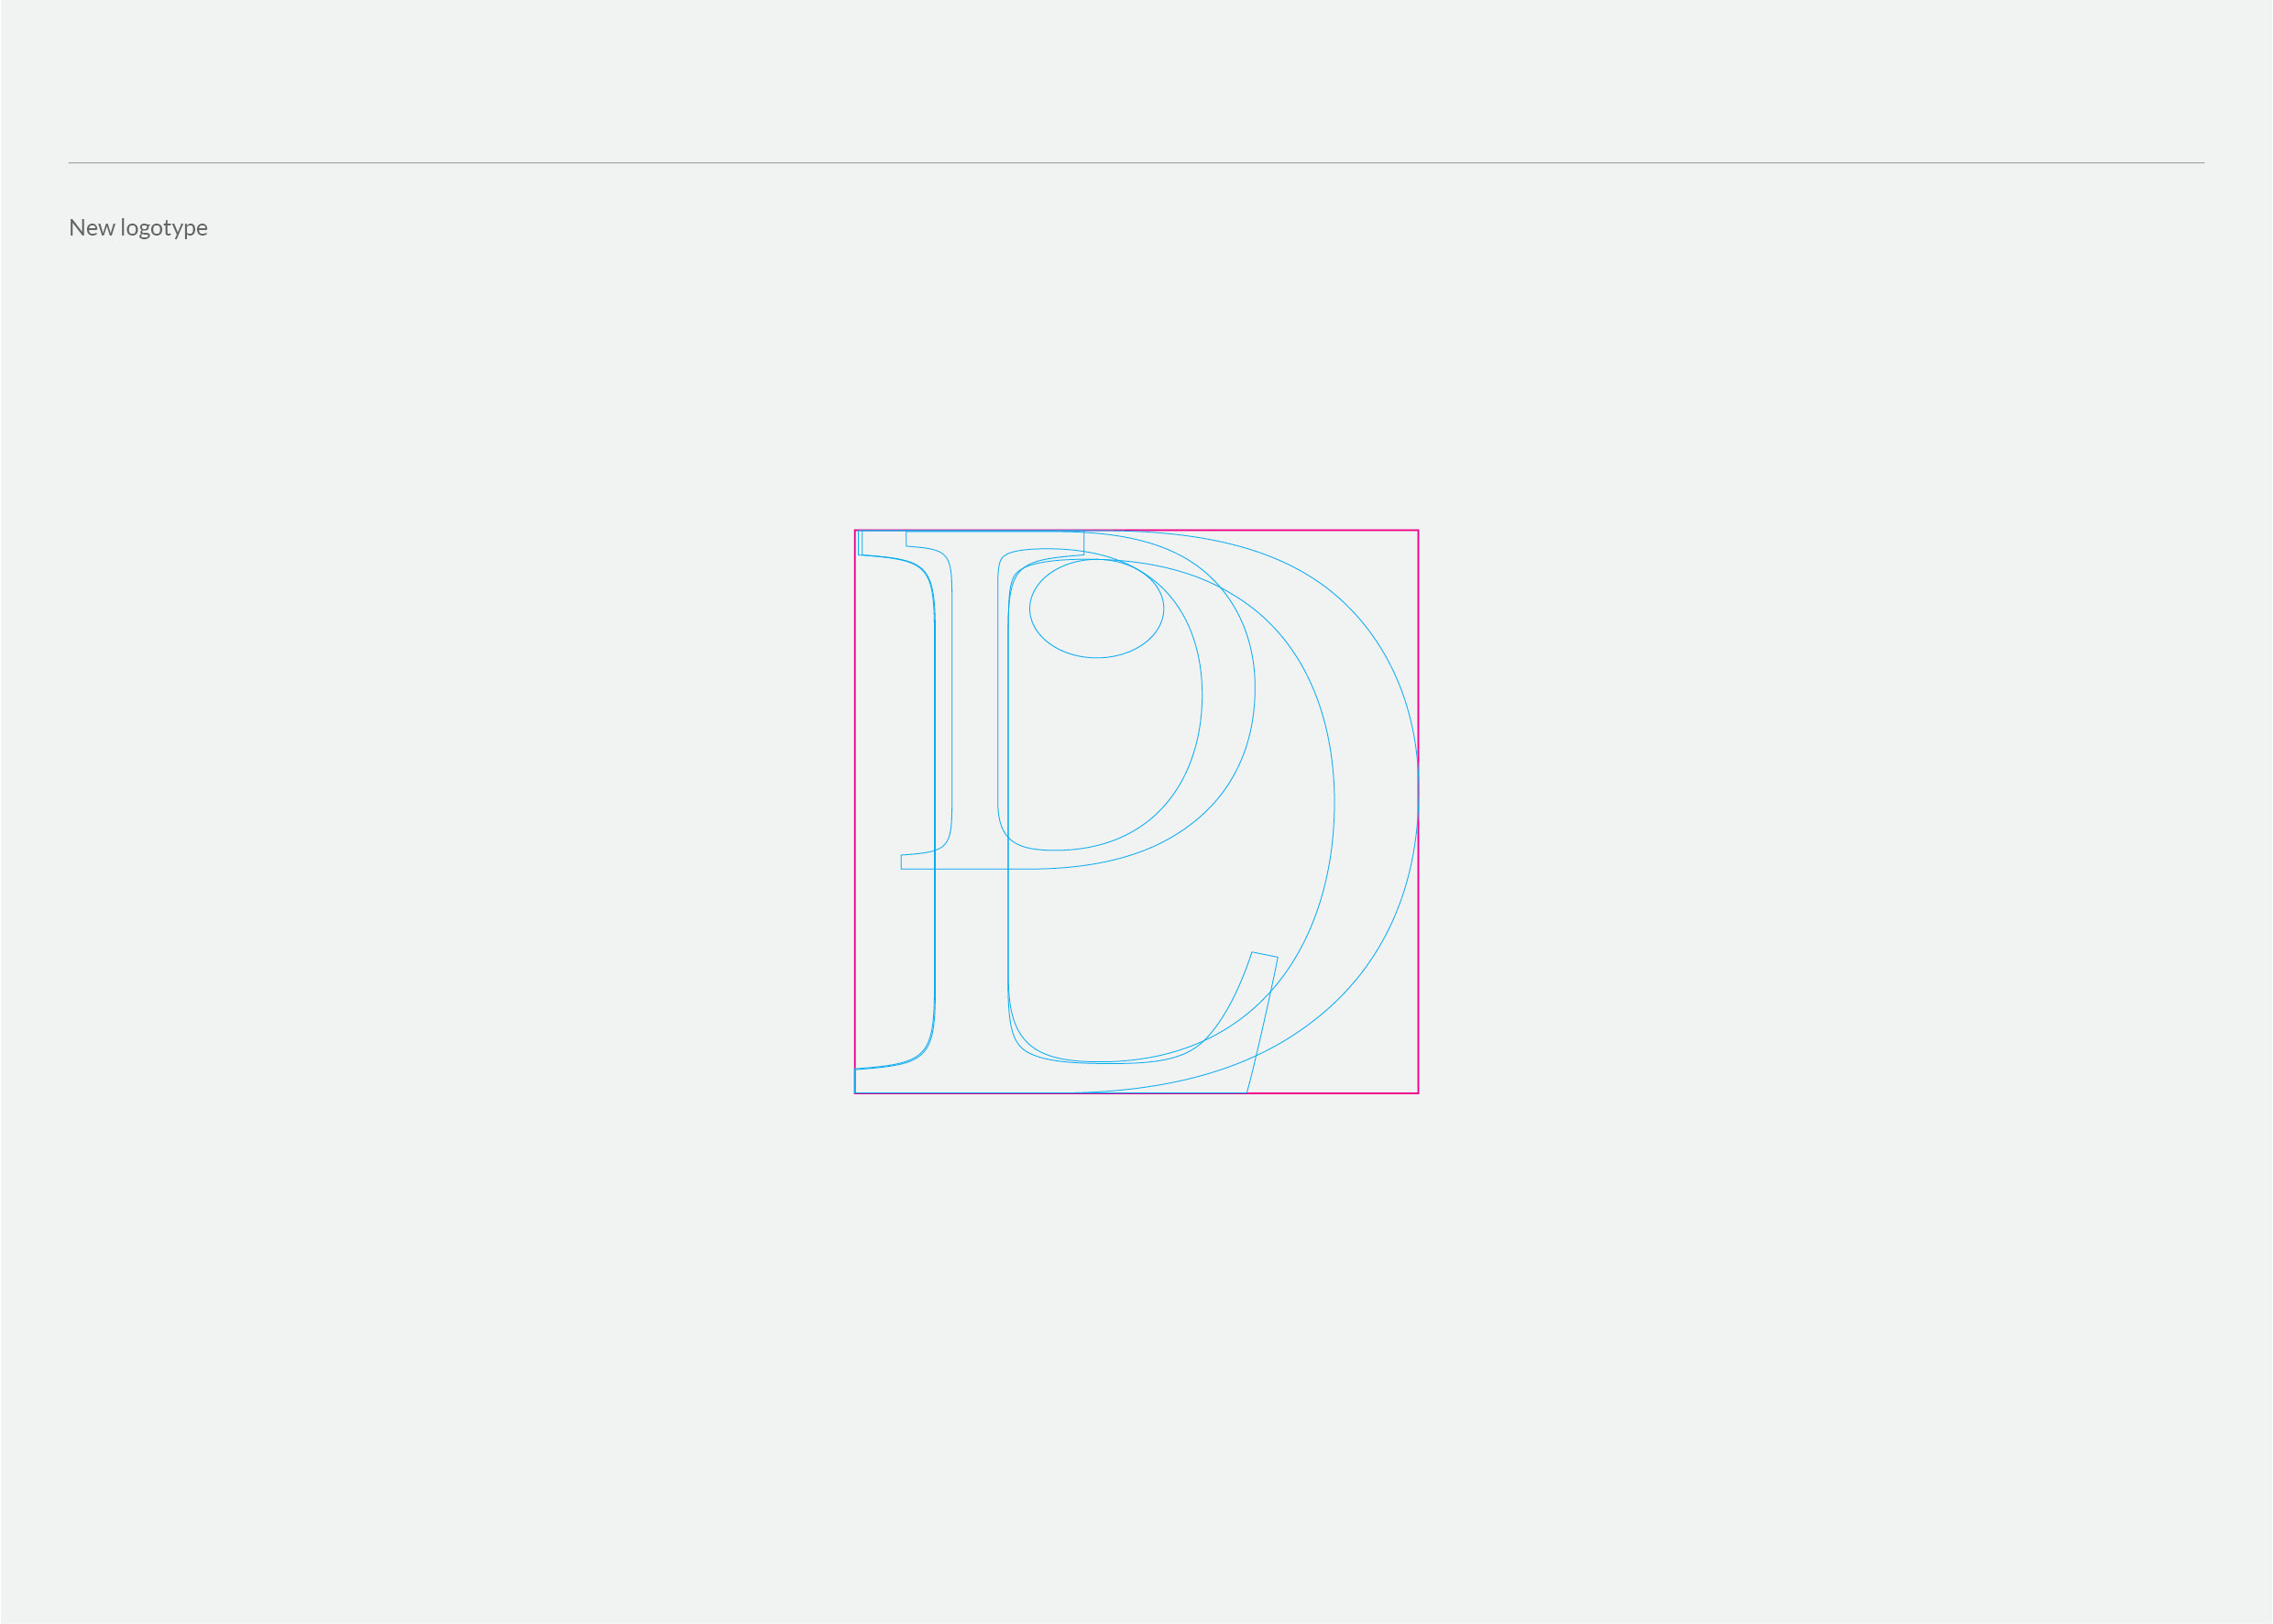 LDP logotype portofolio3